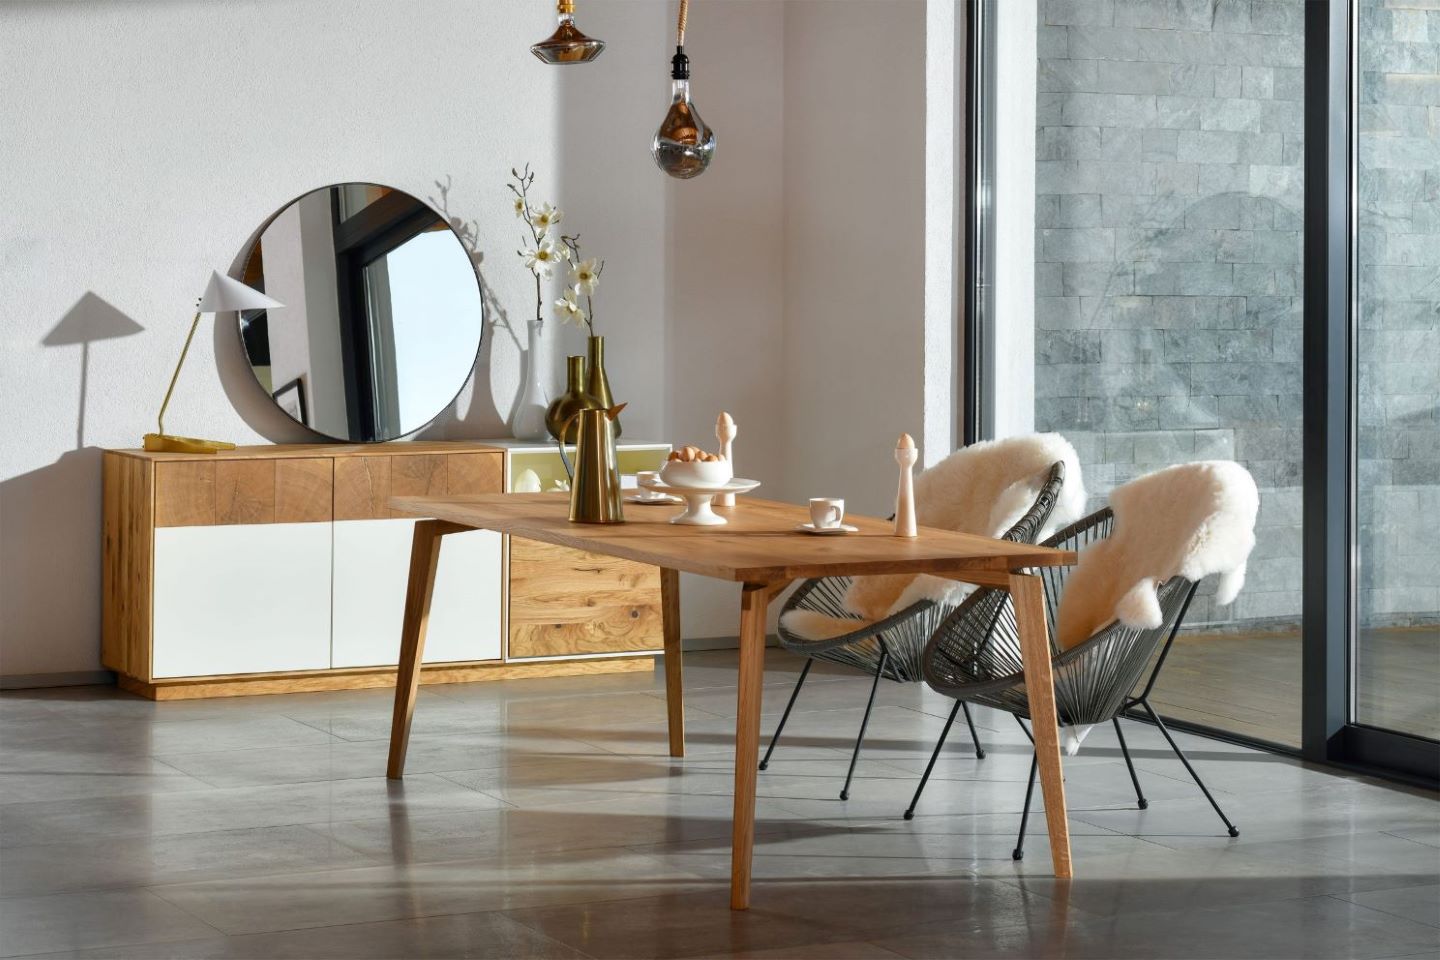 Modern gestalteter LOTTE Esstisch aus Eiche von Whiteoak, in einem hellen, einladenden Raum, flankiert von Stühlen mit Schaffellbezügen und eleganten Wohnaccessoires